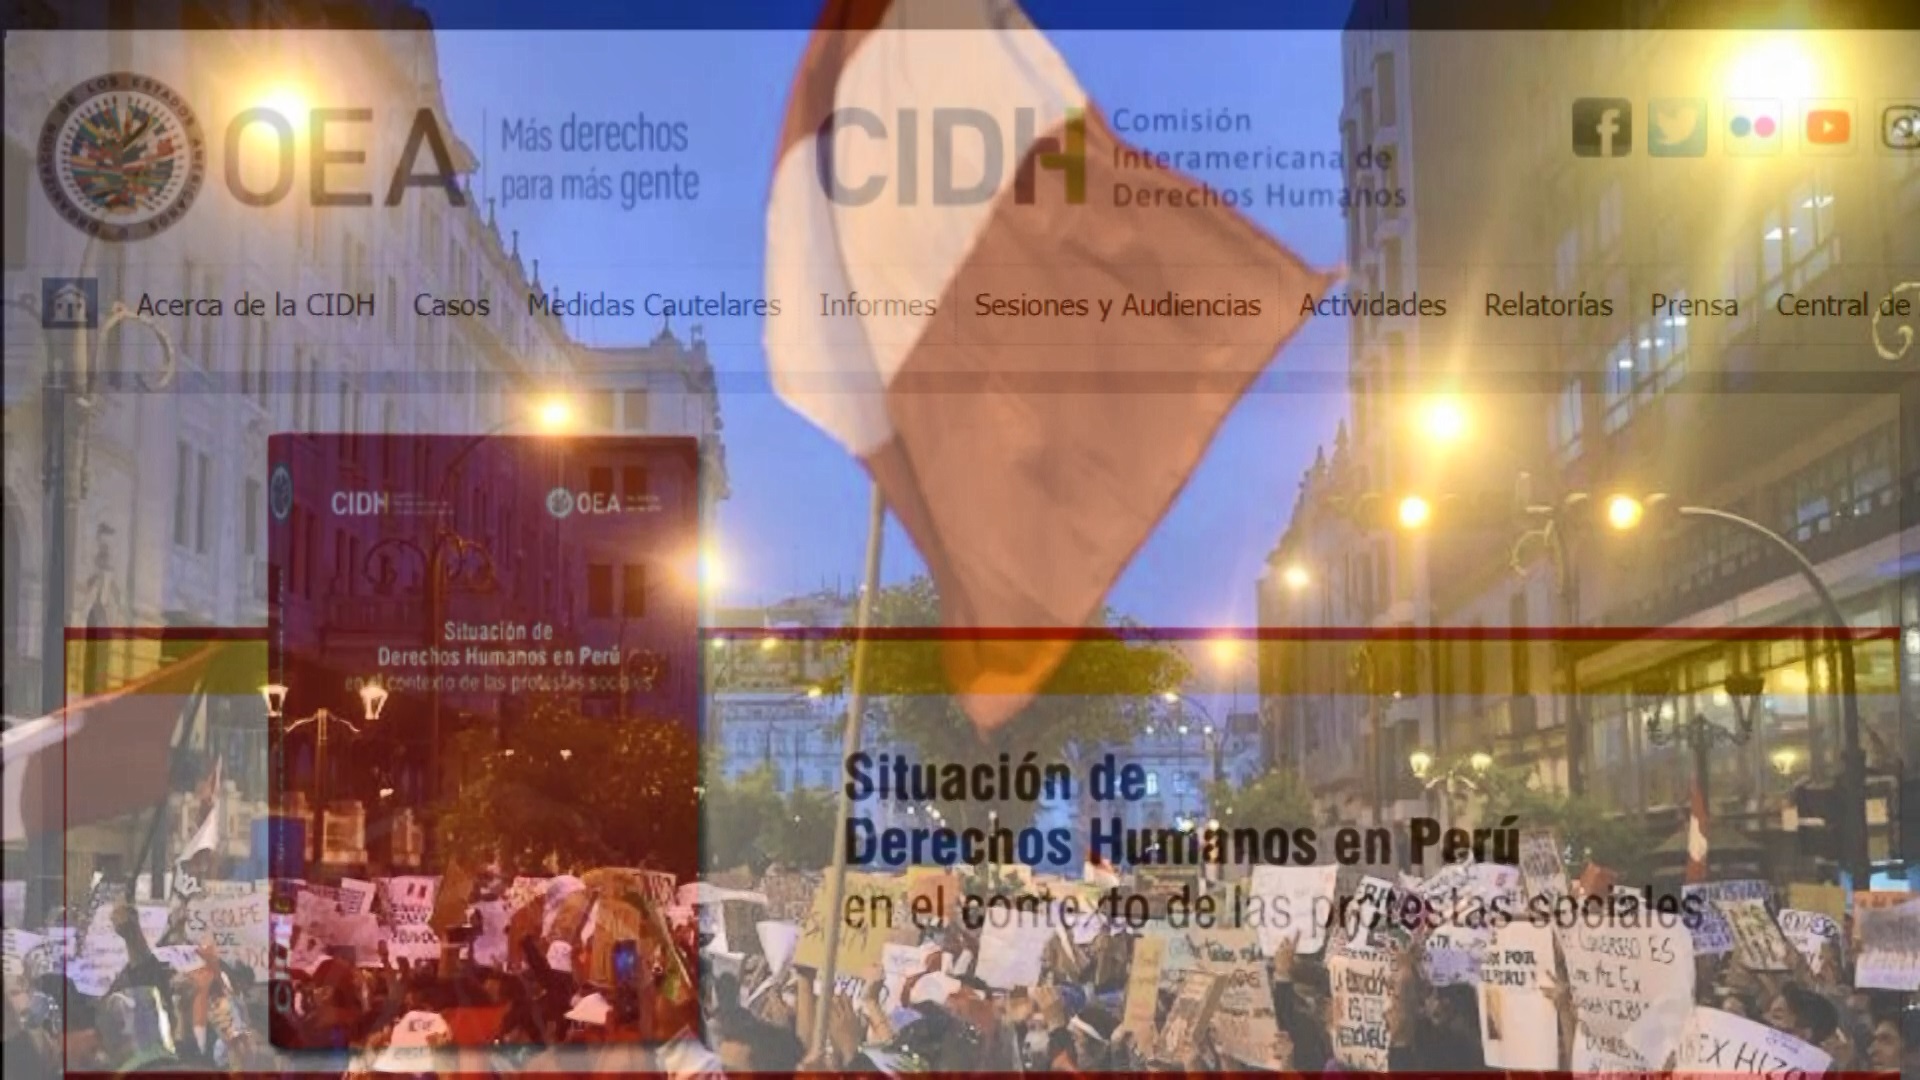 CIDH concluye que en el Perú el Estado hizo uso excesivo e indiscriminado de la fuerza y graves violaciones a los derechos humanos.